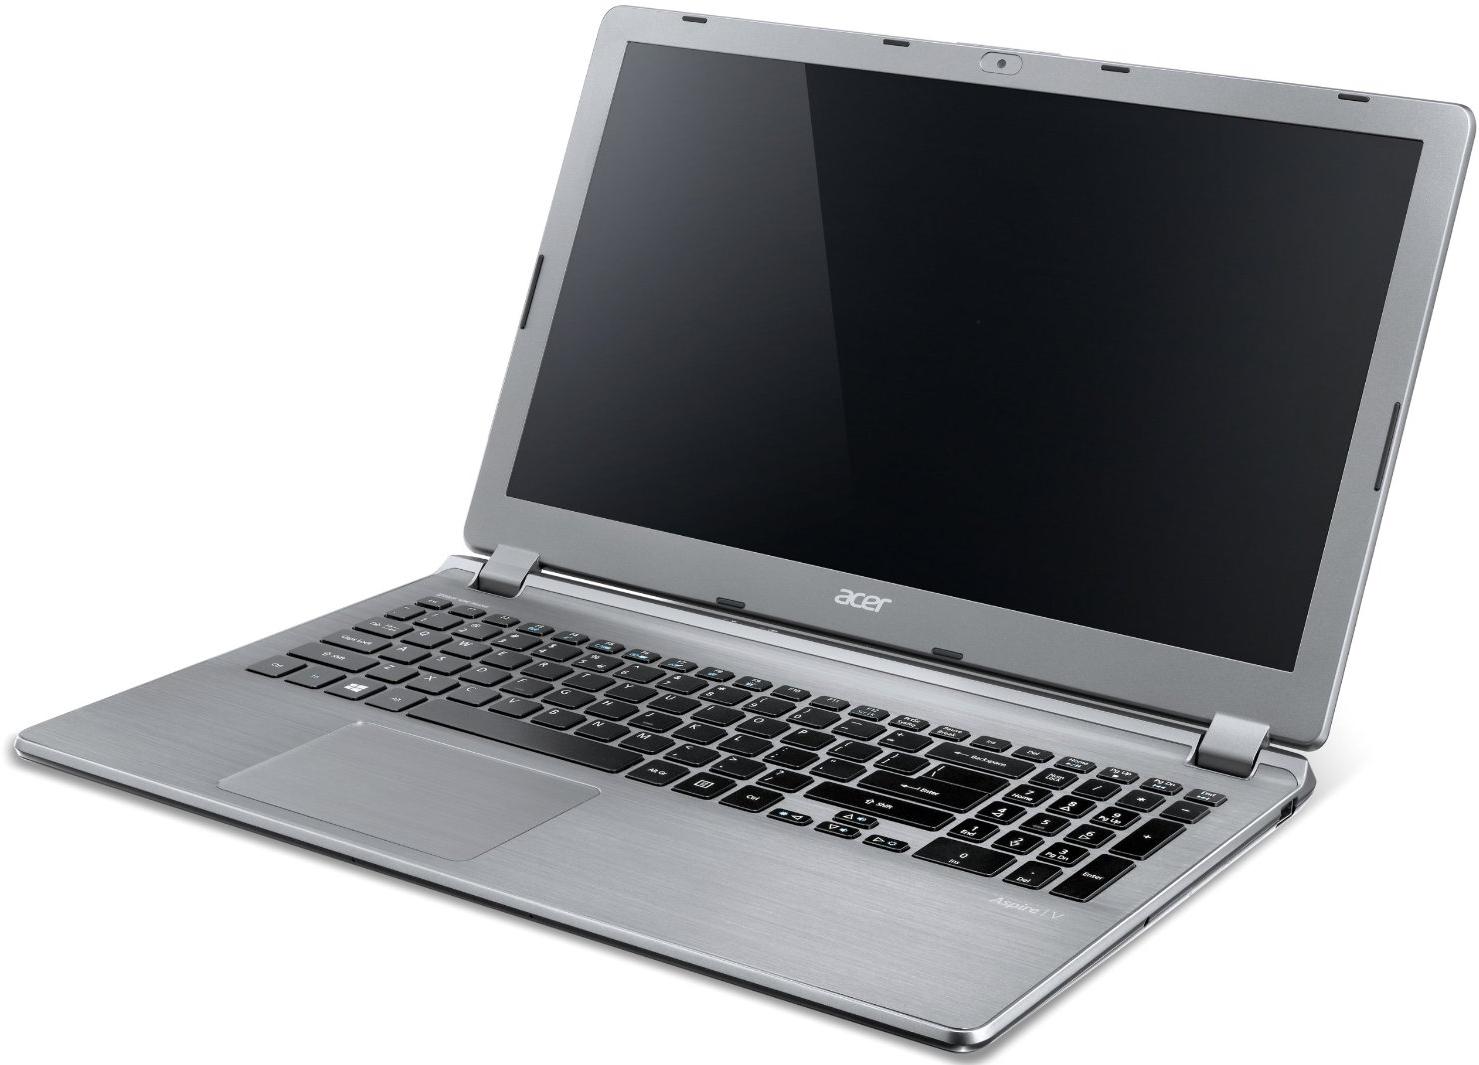   Acer Aspire E5-573G-P71Q (NX.MVMER.102)  1